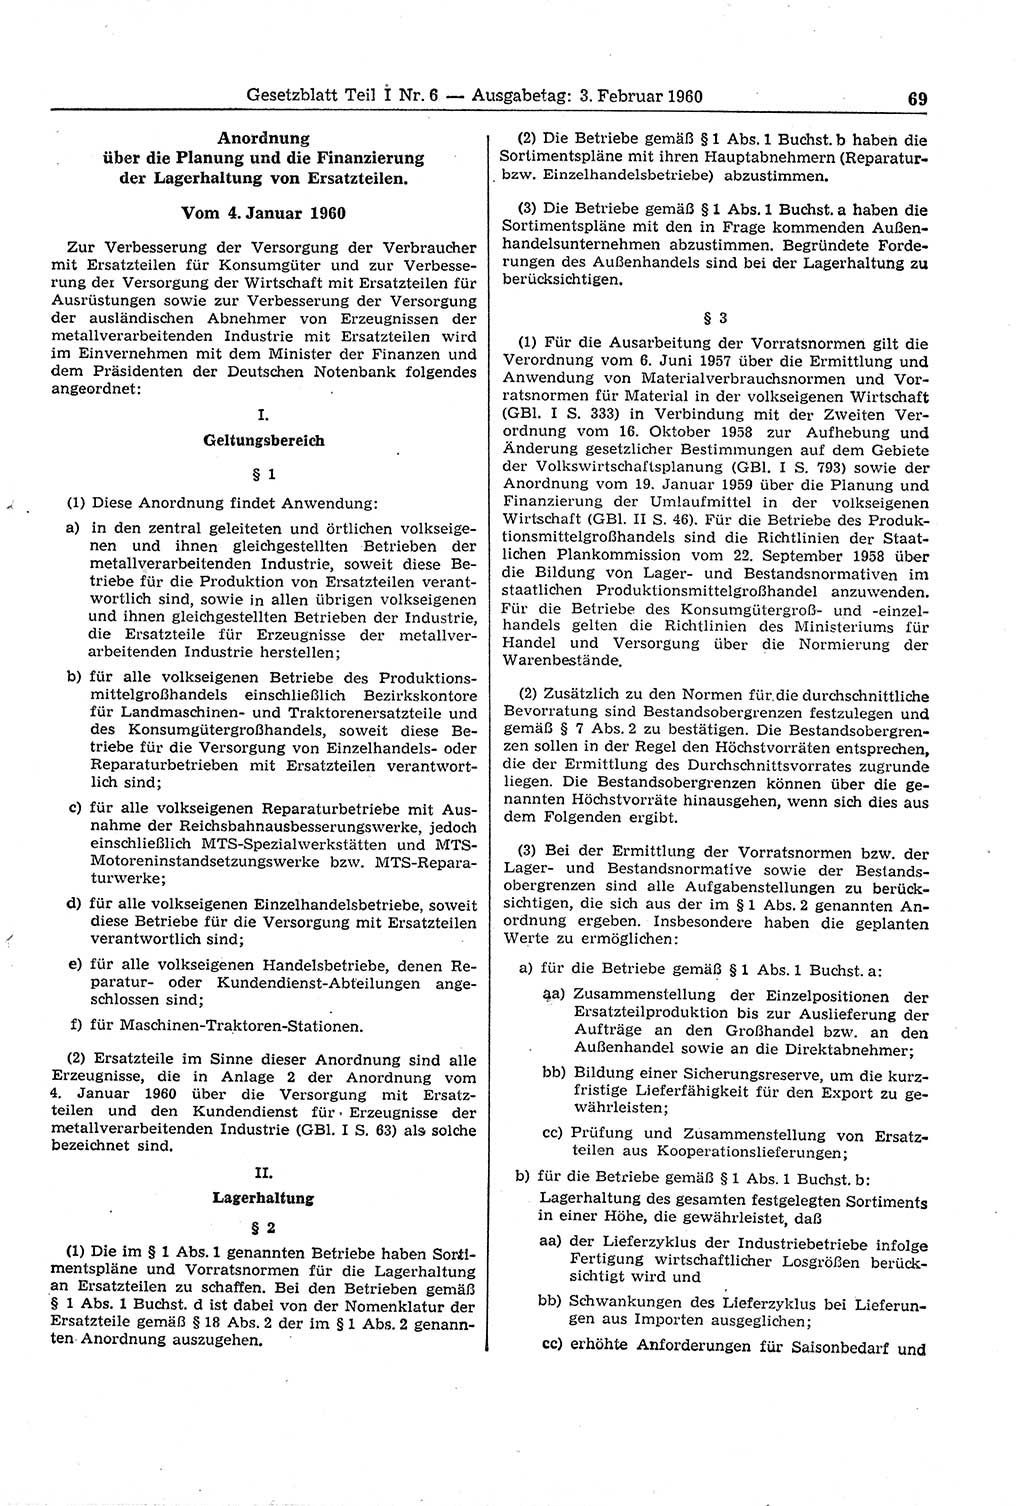 Gesetzblatt (GBl.) der Deutschen Demokratischen Republik (DDR) Teil Ⅰ 1960, Seite 69 (GBl. DDR Ⅰ 1960, S. 69)